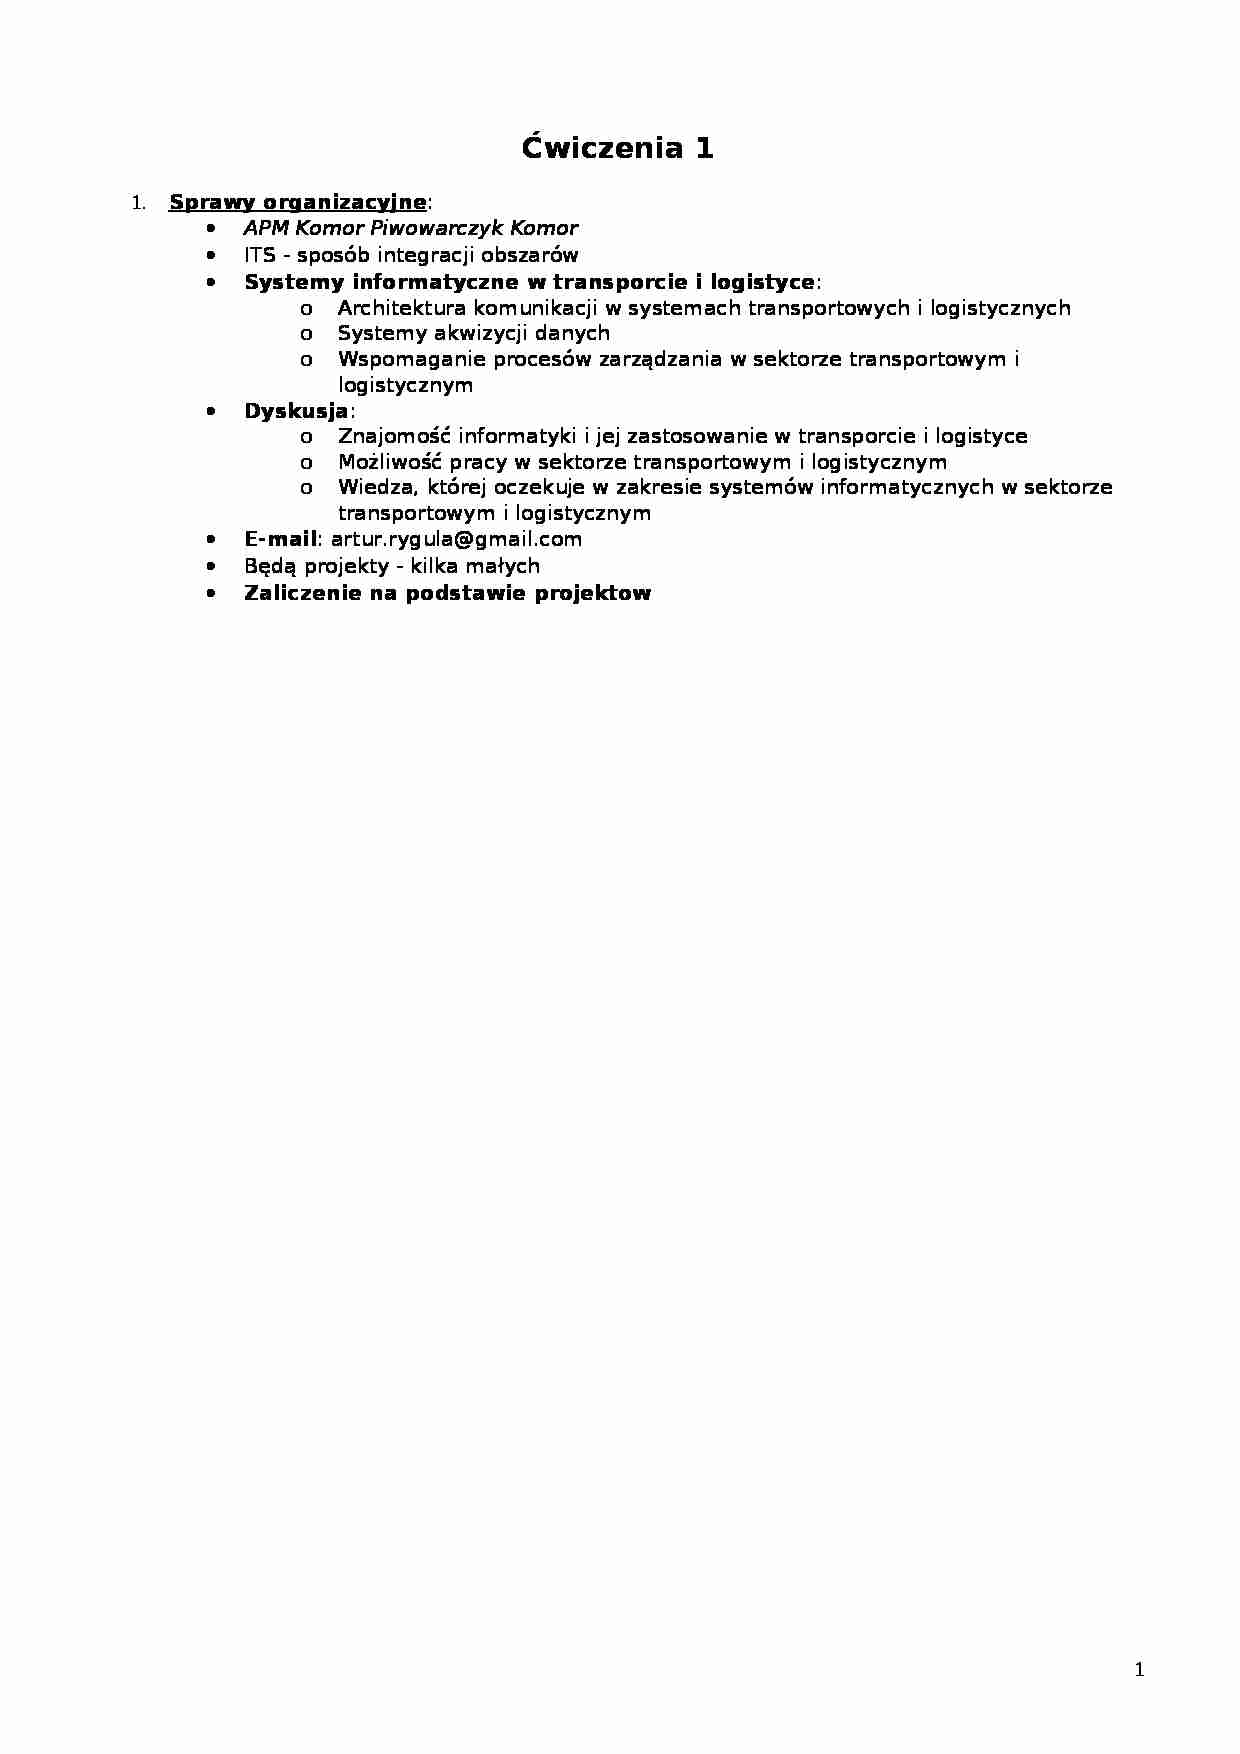 Ćwiczenia - Systemy informatyczne w transporcie i logistyce - ITS - strona 1